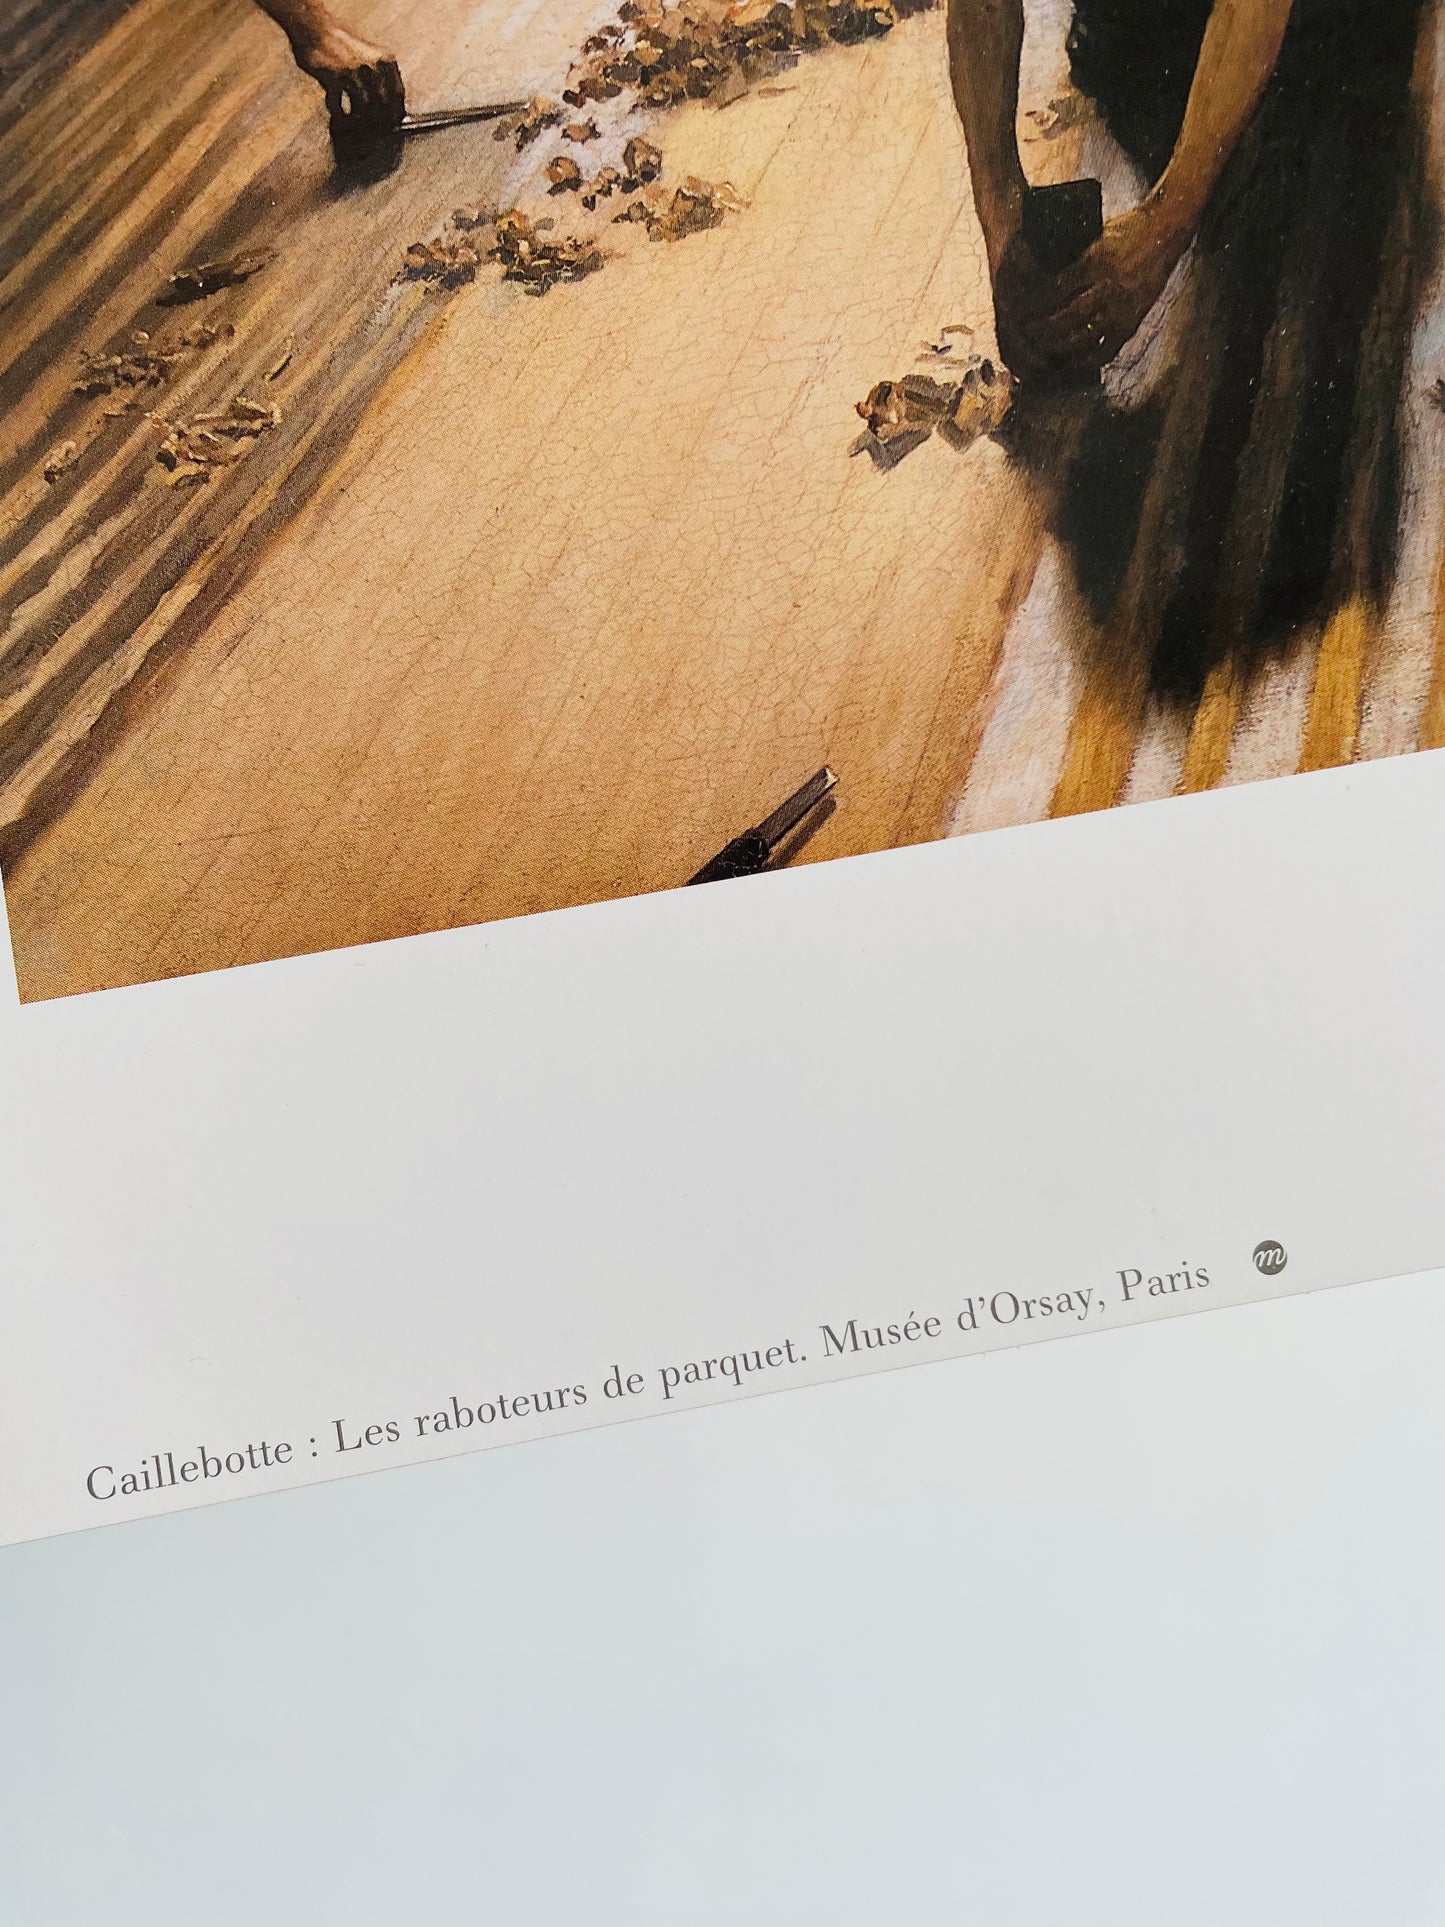 Gustave Caillebotte 'Les Raboteurs de Parquet'  Poster Print - 9.5" by 11.75"